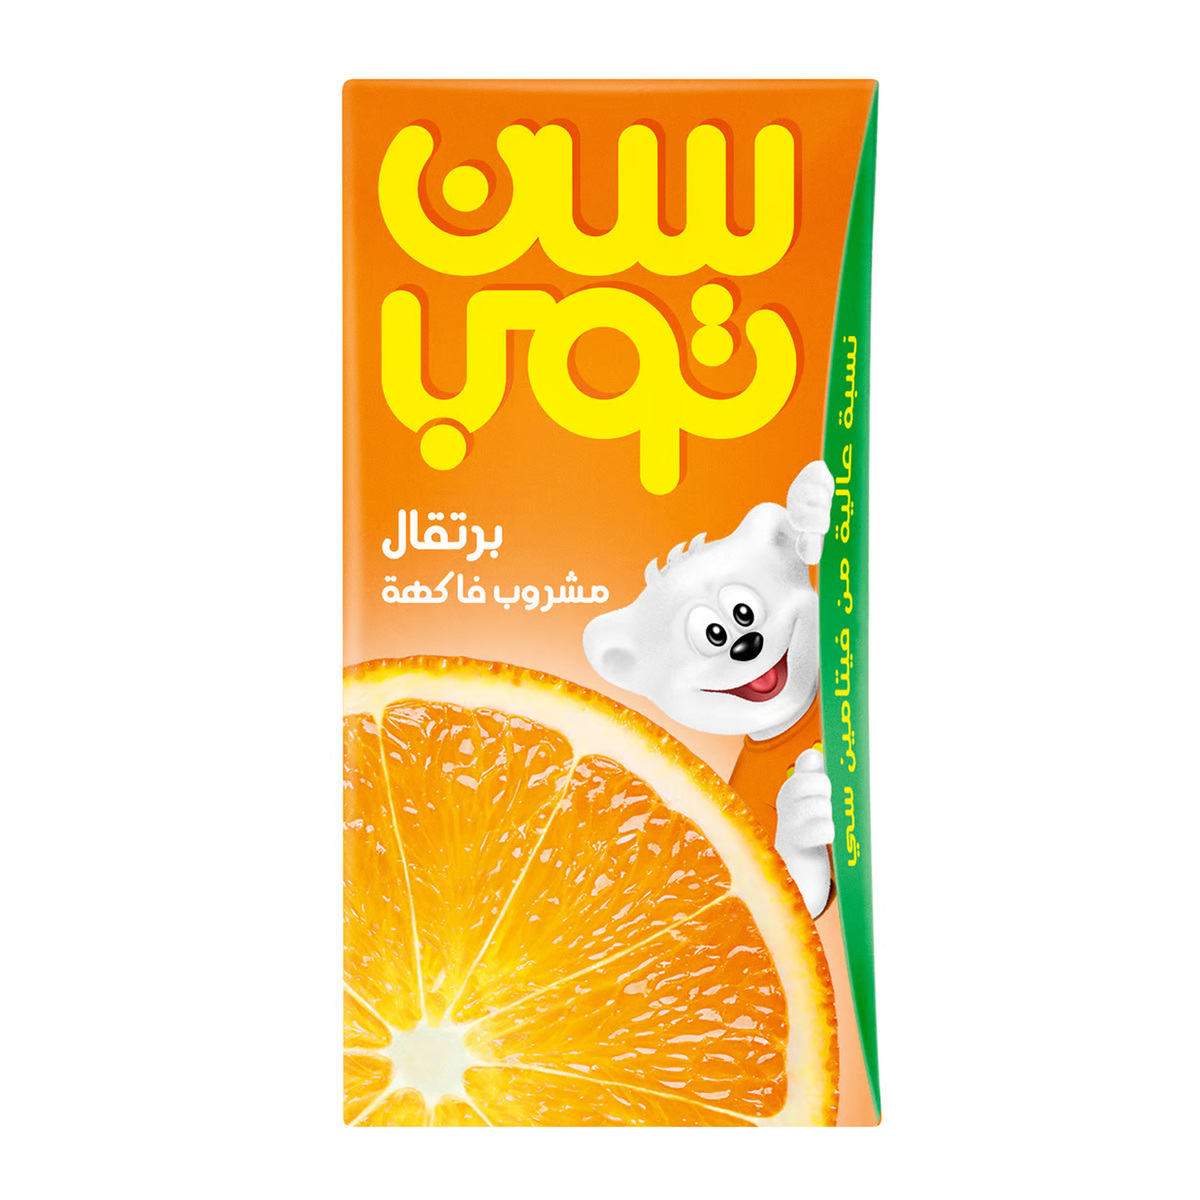 Suntop Orange Fruit Drink 18 x 125 ml